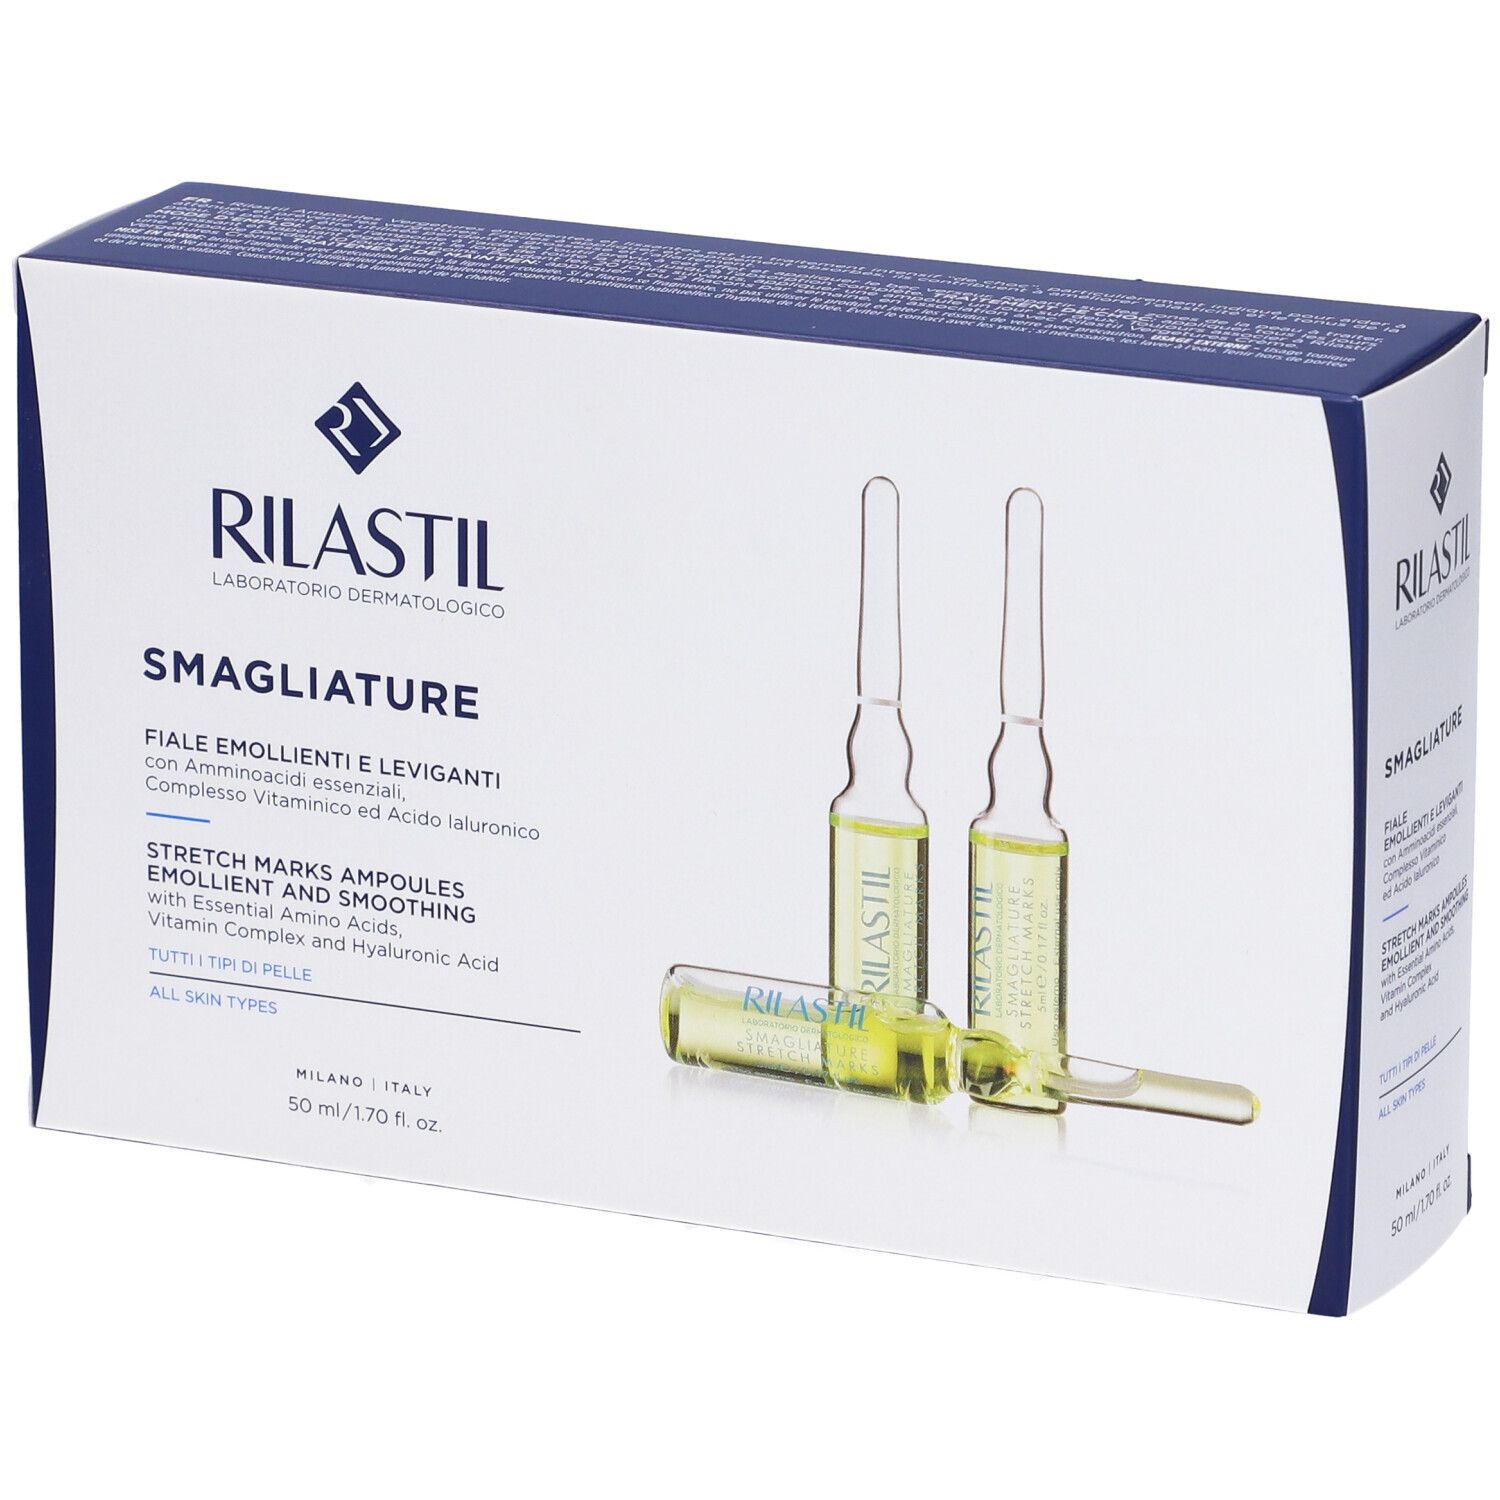 Rilastil ® Smagliature Fiale 10x5 ml Fiale